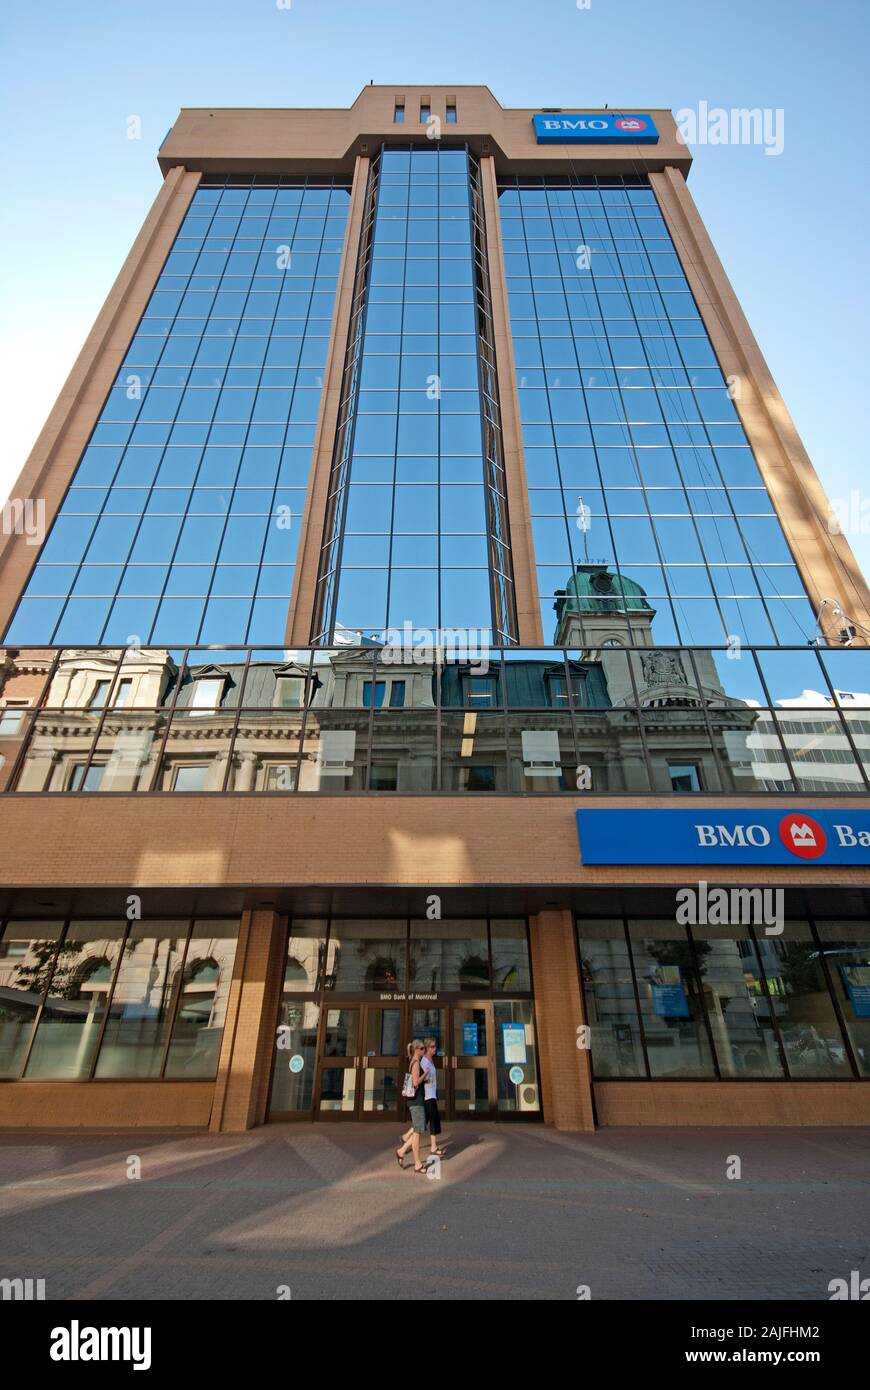 BMO (Banco de Montreal) rascacielos en Regina, Saskatchewan, Canadá Foto de stock